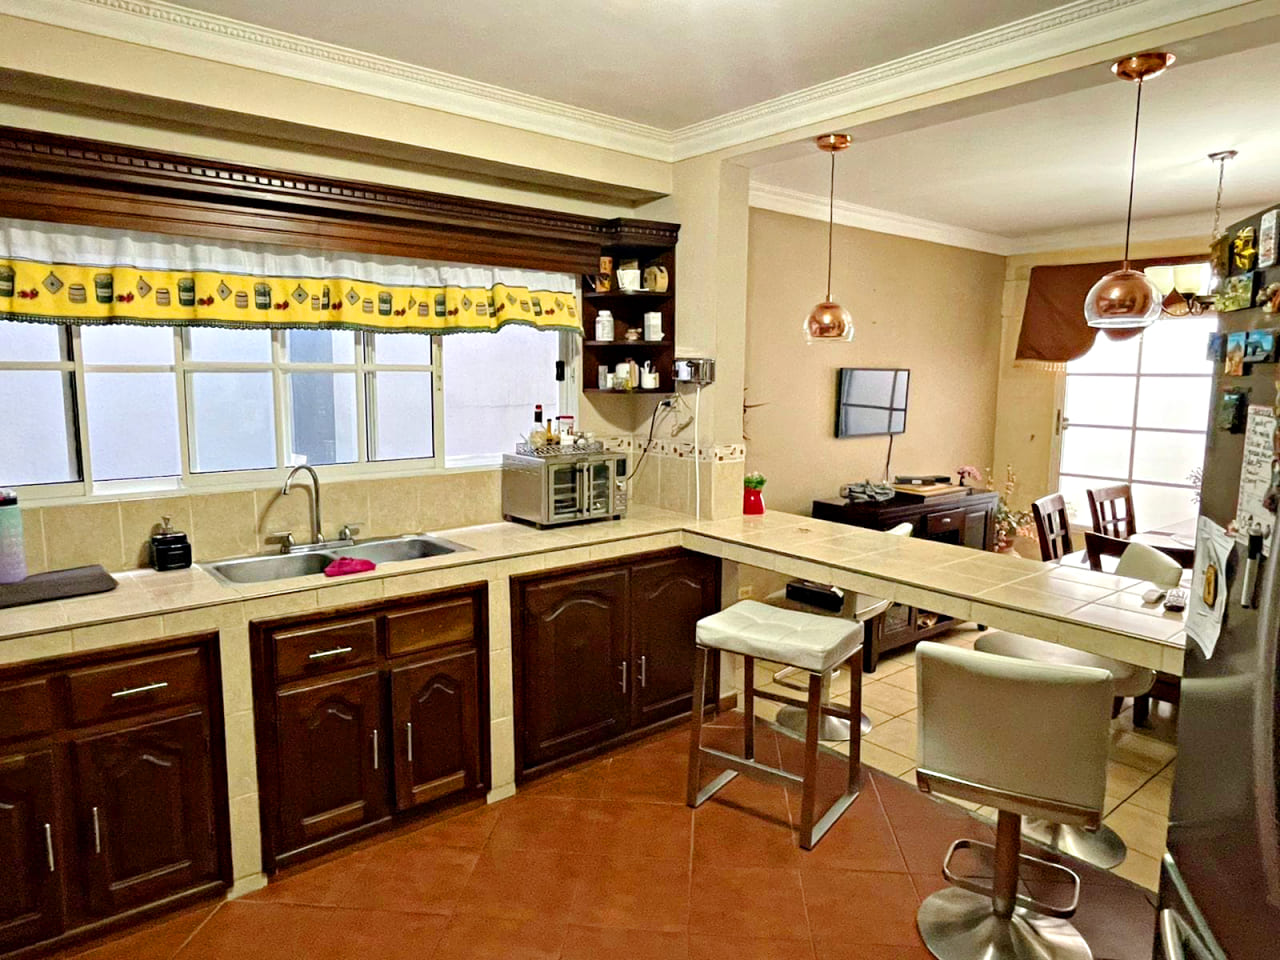 Hermosa cocina amueblada, con cocinera y desayunador, con una amplia ventana corrediza para que fluya el aire por toda la casa,, con suelo de caramica color naranja rojizo.